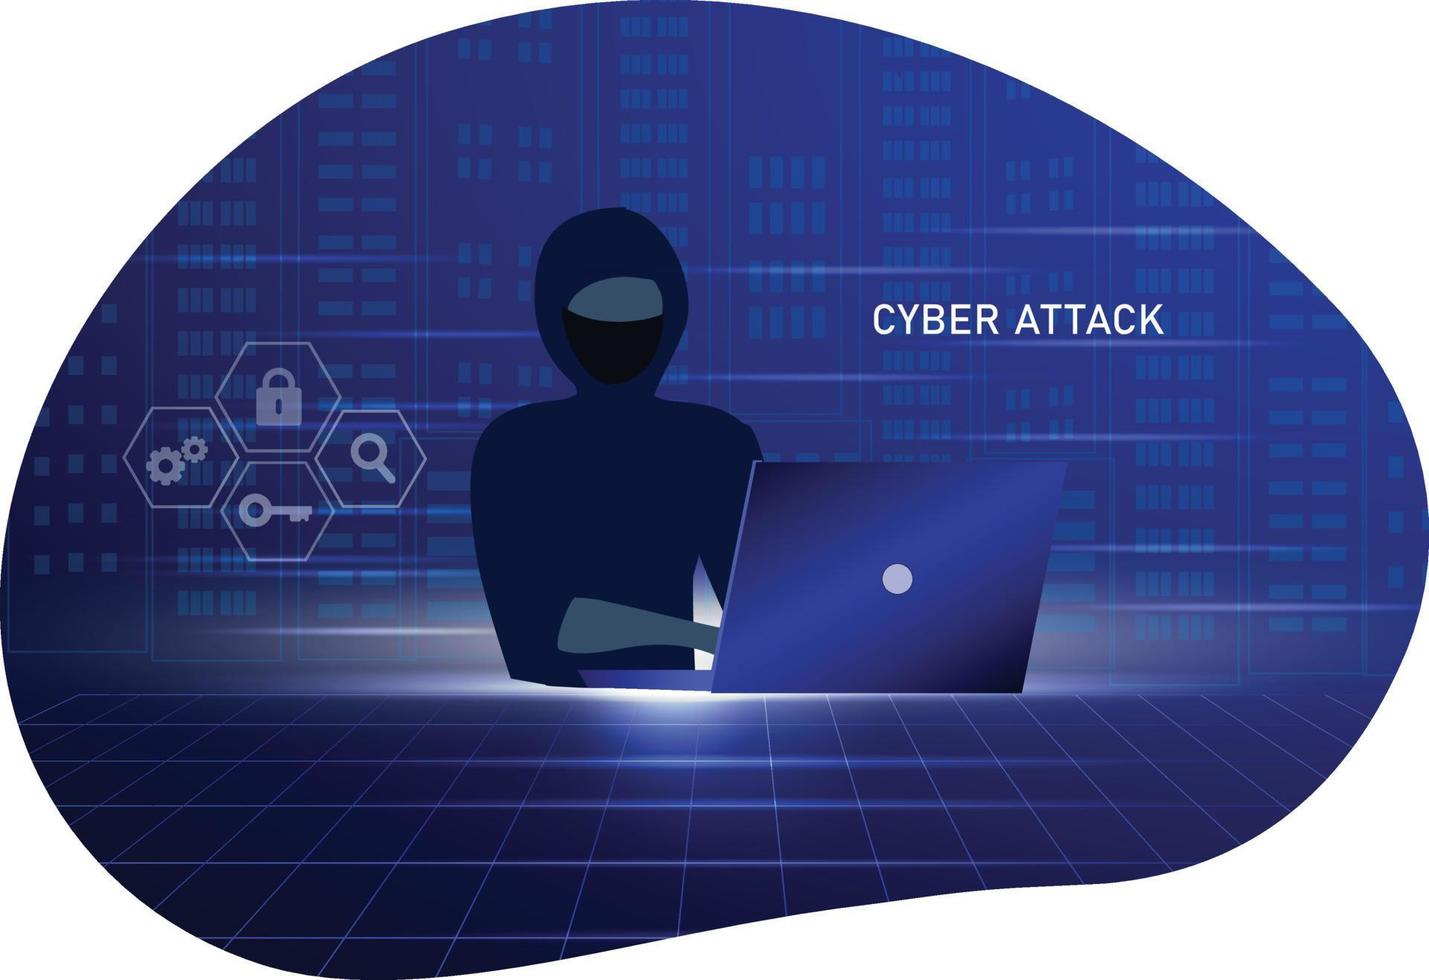 hackerbrottsattack och personlig datasäkerhetskoncept. hackare försöker låsa upp nyckeln på datorn och nätfiskekontot, stjäl lösenord. cybersäkerhet, säkerhetssystem och internetbrottskoncept. vektor